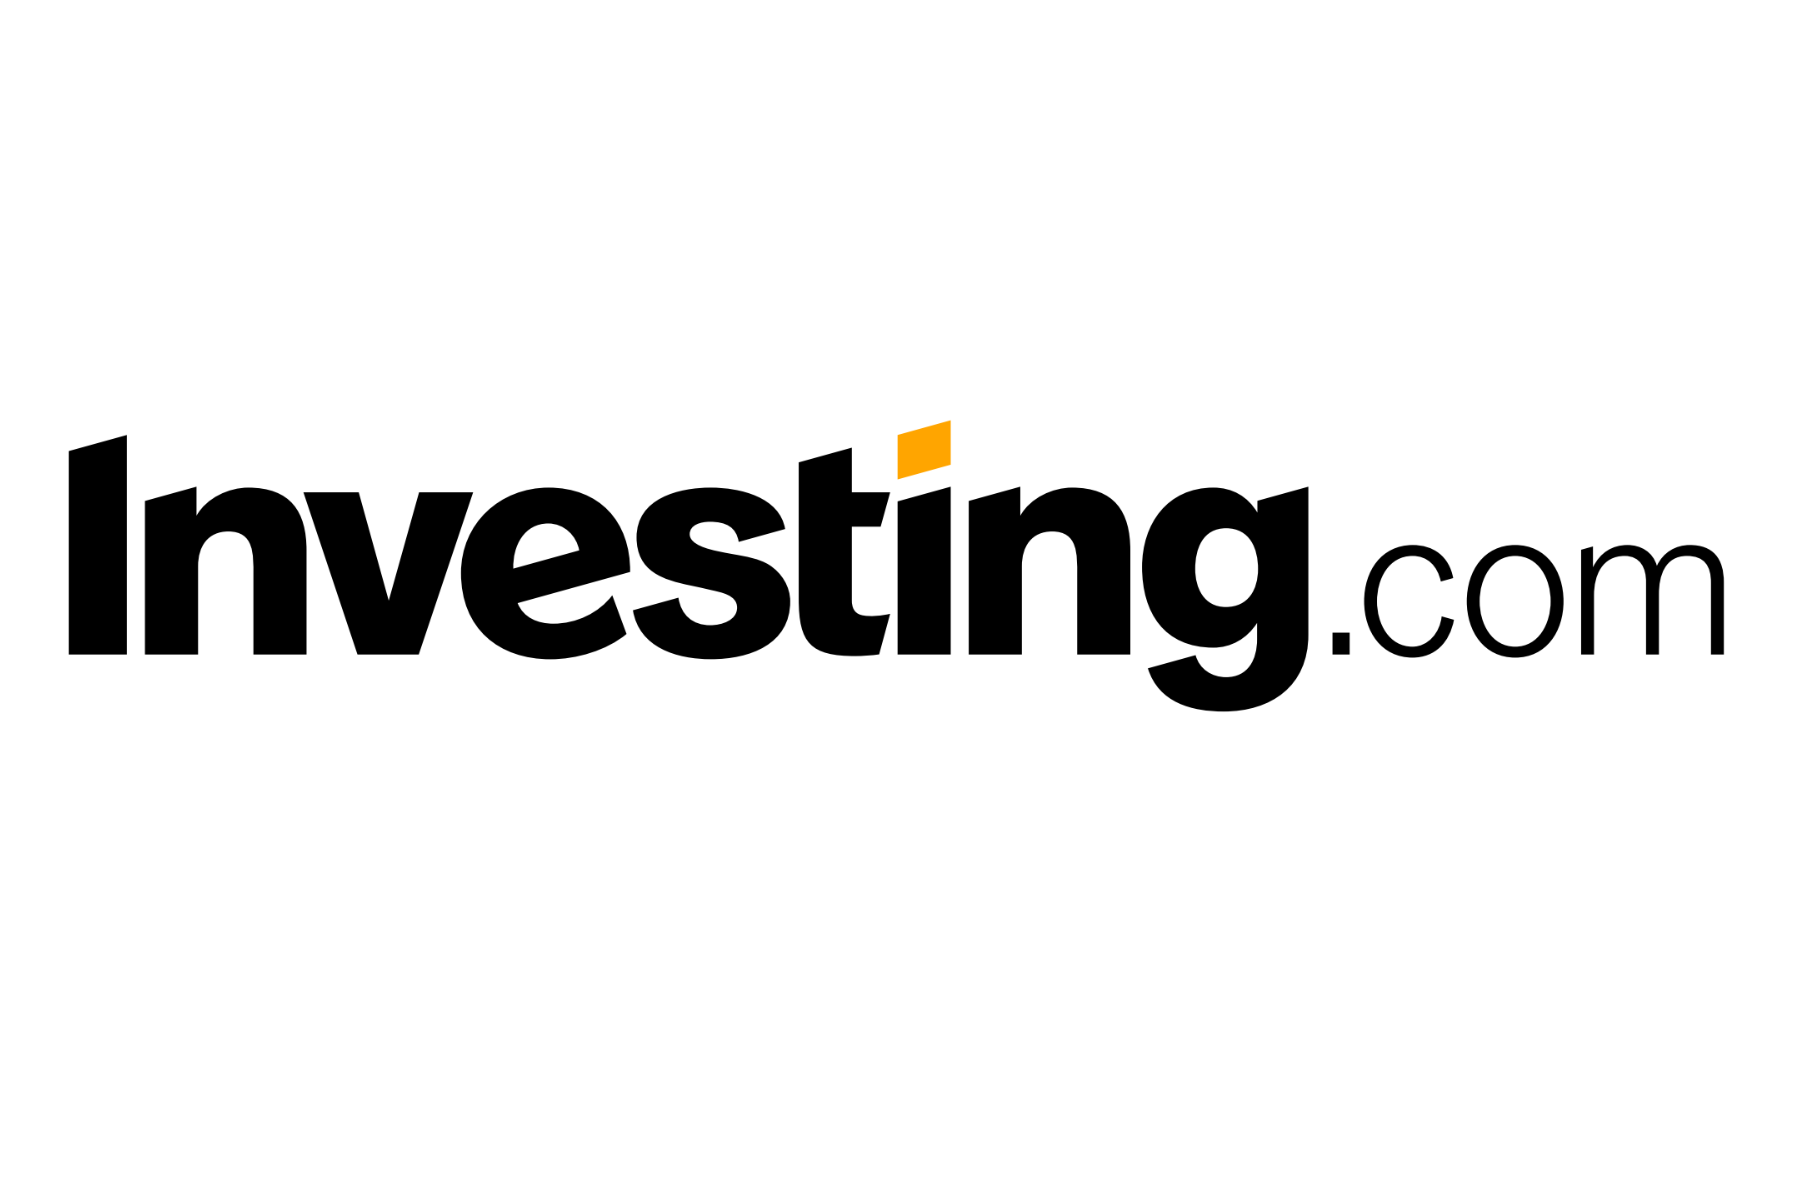 Ecapusta com. Investing.com. Investing лого. Investing.com logo. WINVESTOR логотип.